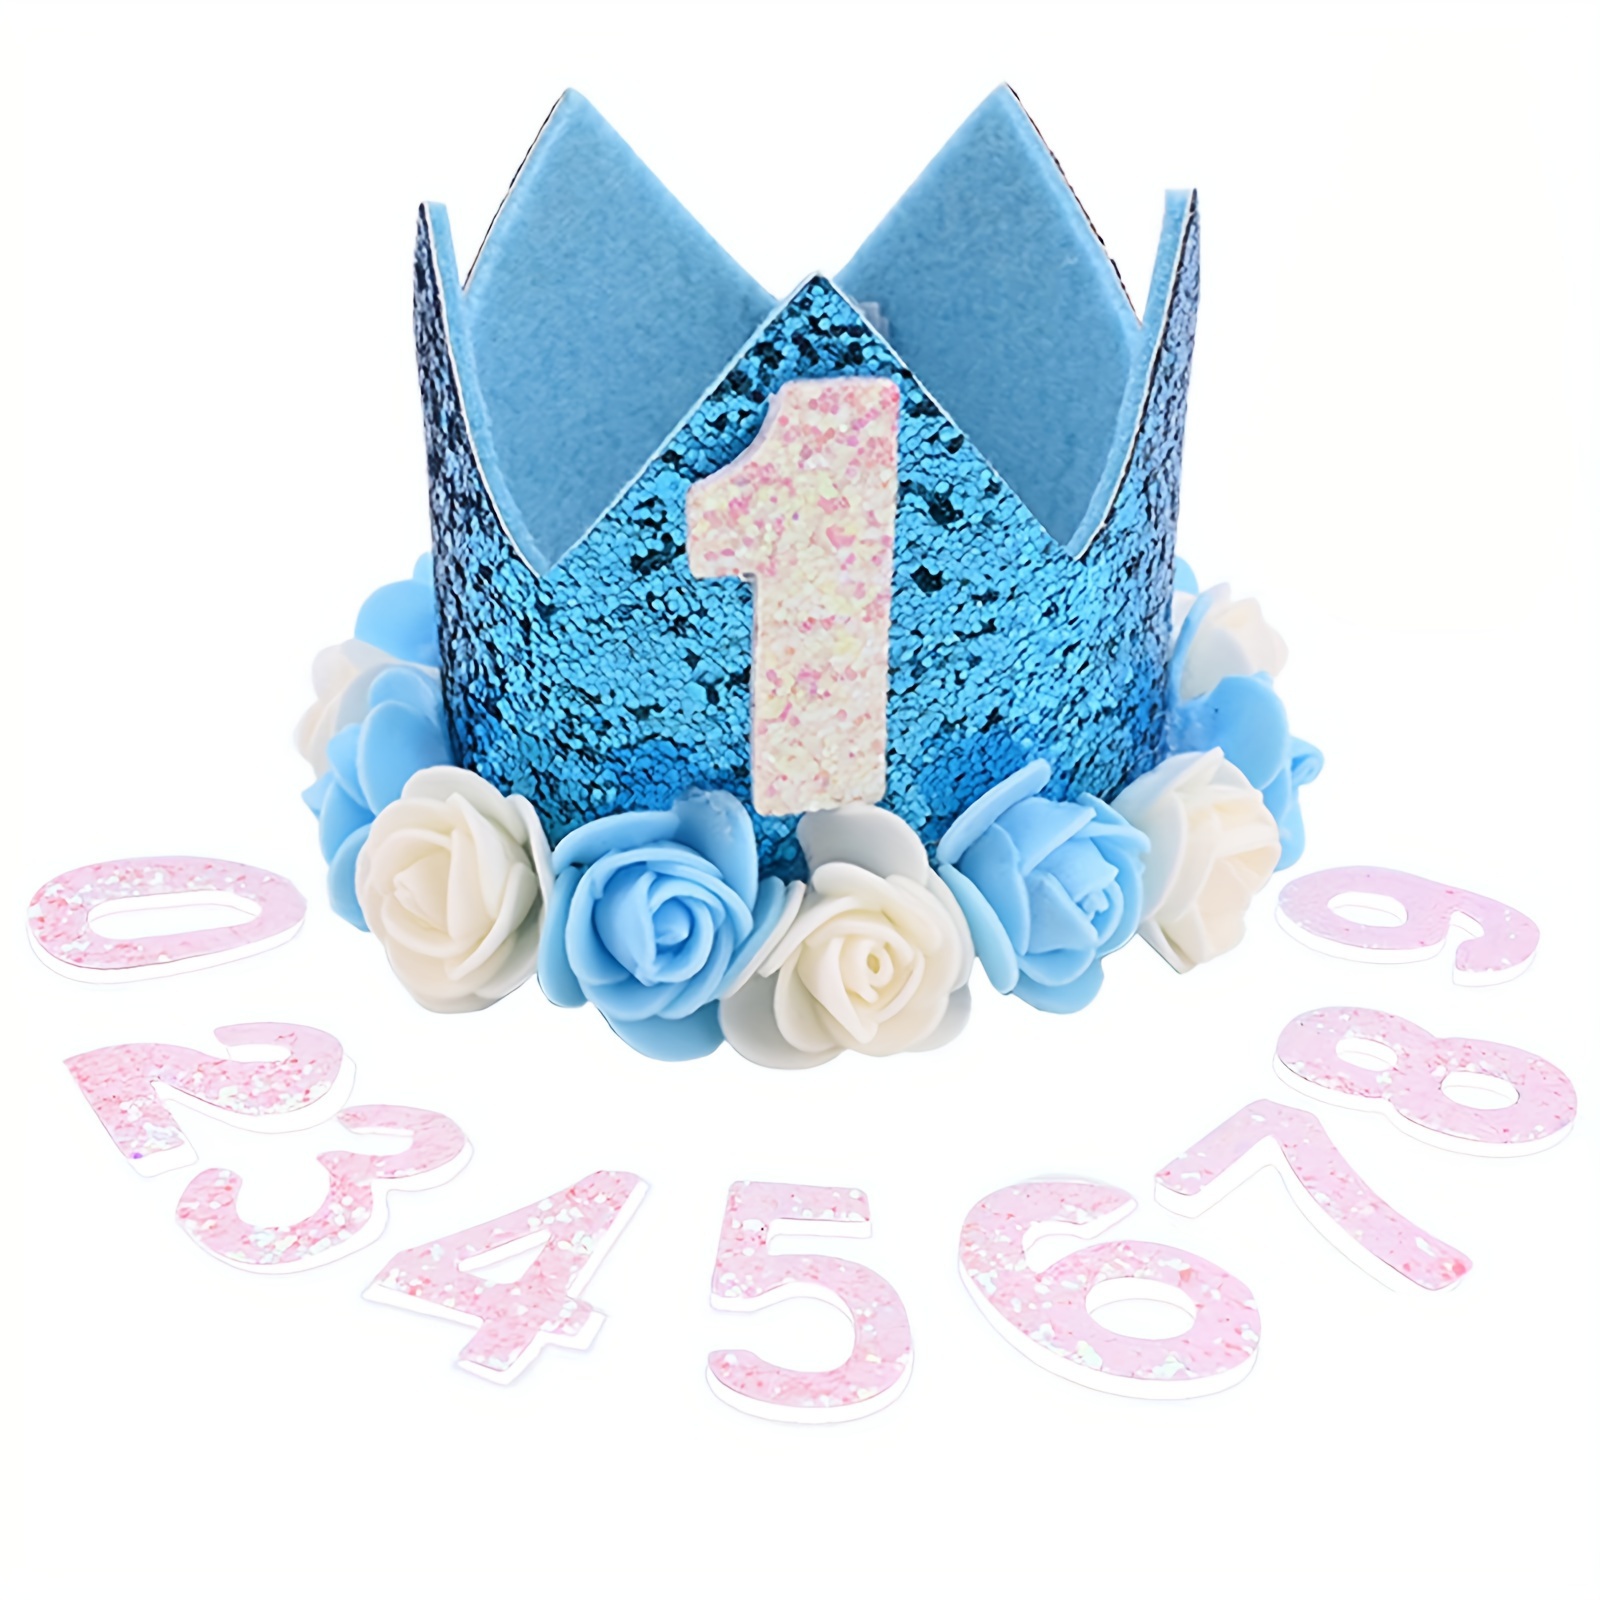 Decoraciones de cumpleaños de 3 años para niñas; banda, corona/tiara, velas  y adorno para pastel de cumpleaños de 3 años; regalos y decoraciones de